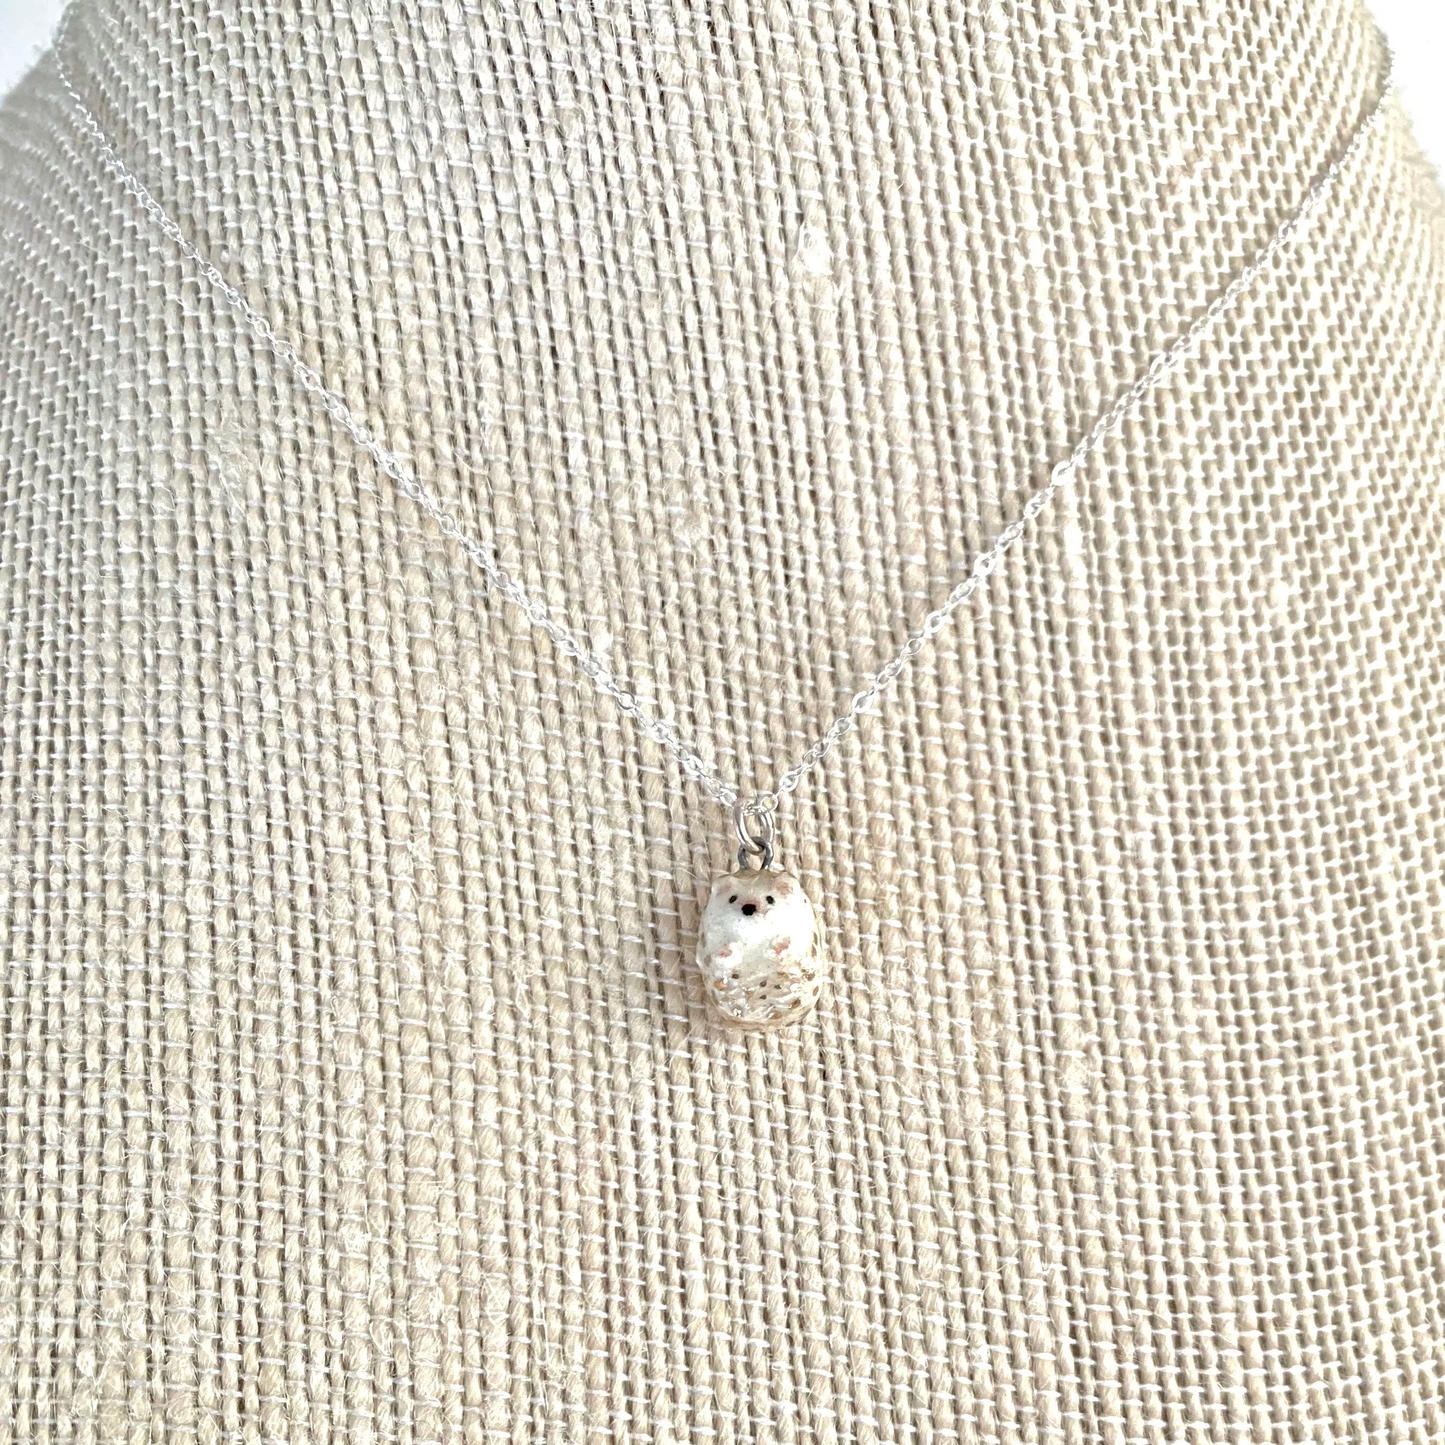 Tiny Hedgehog Necklace